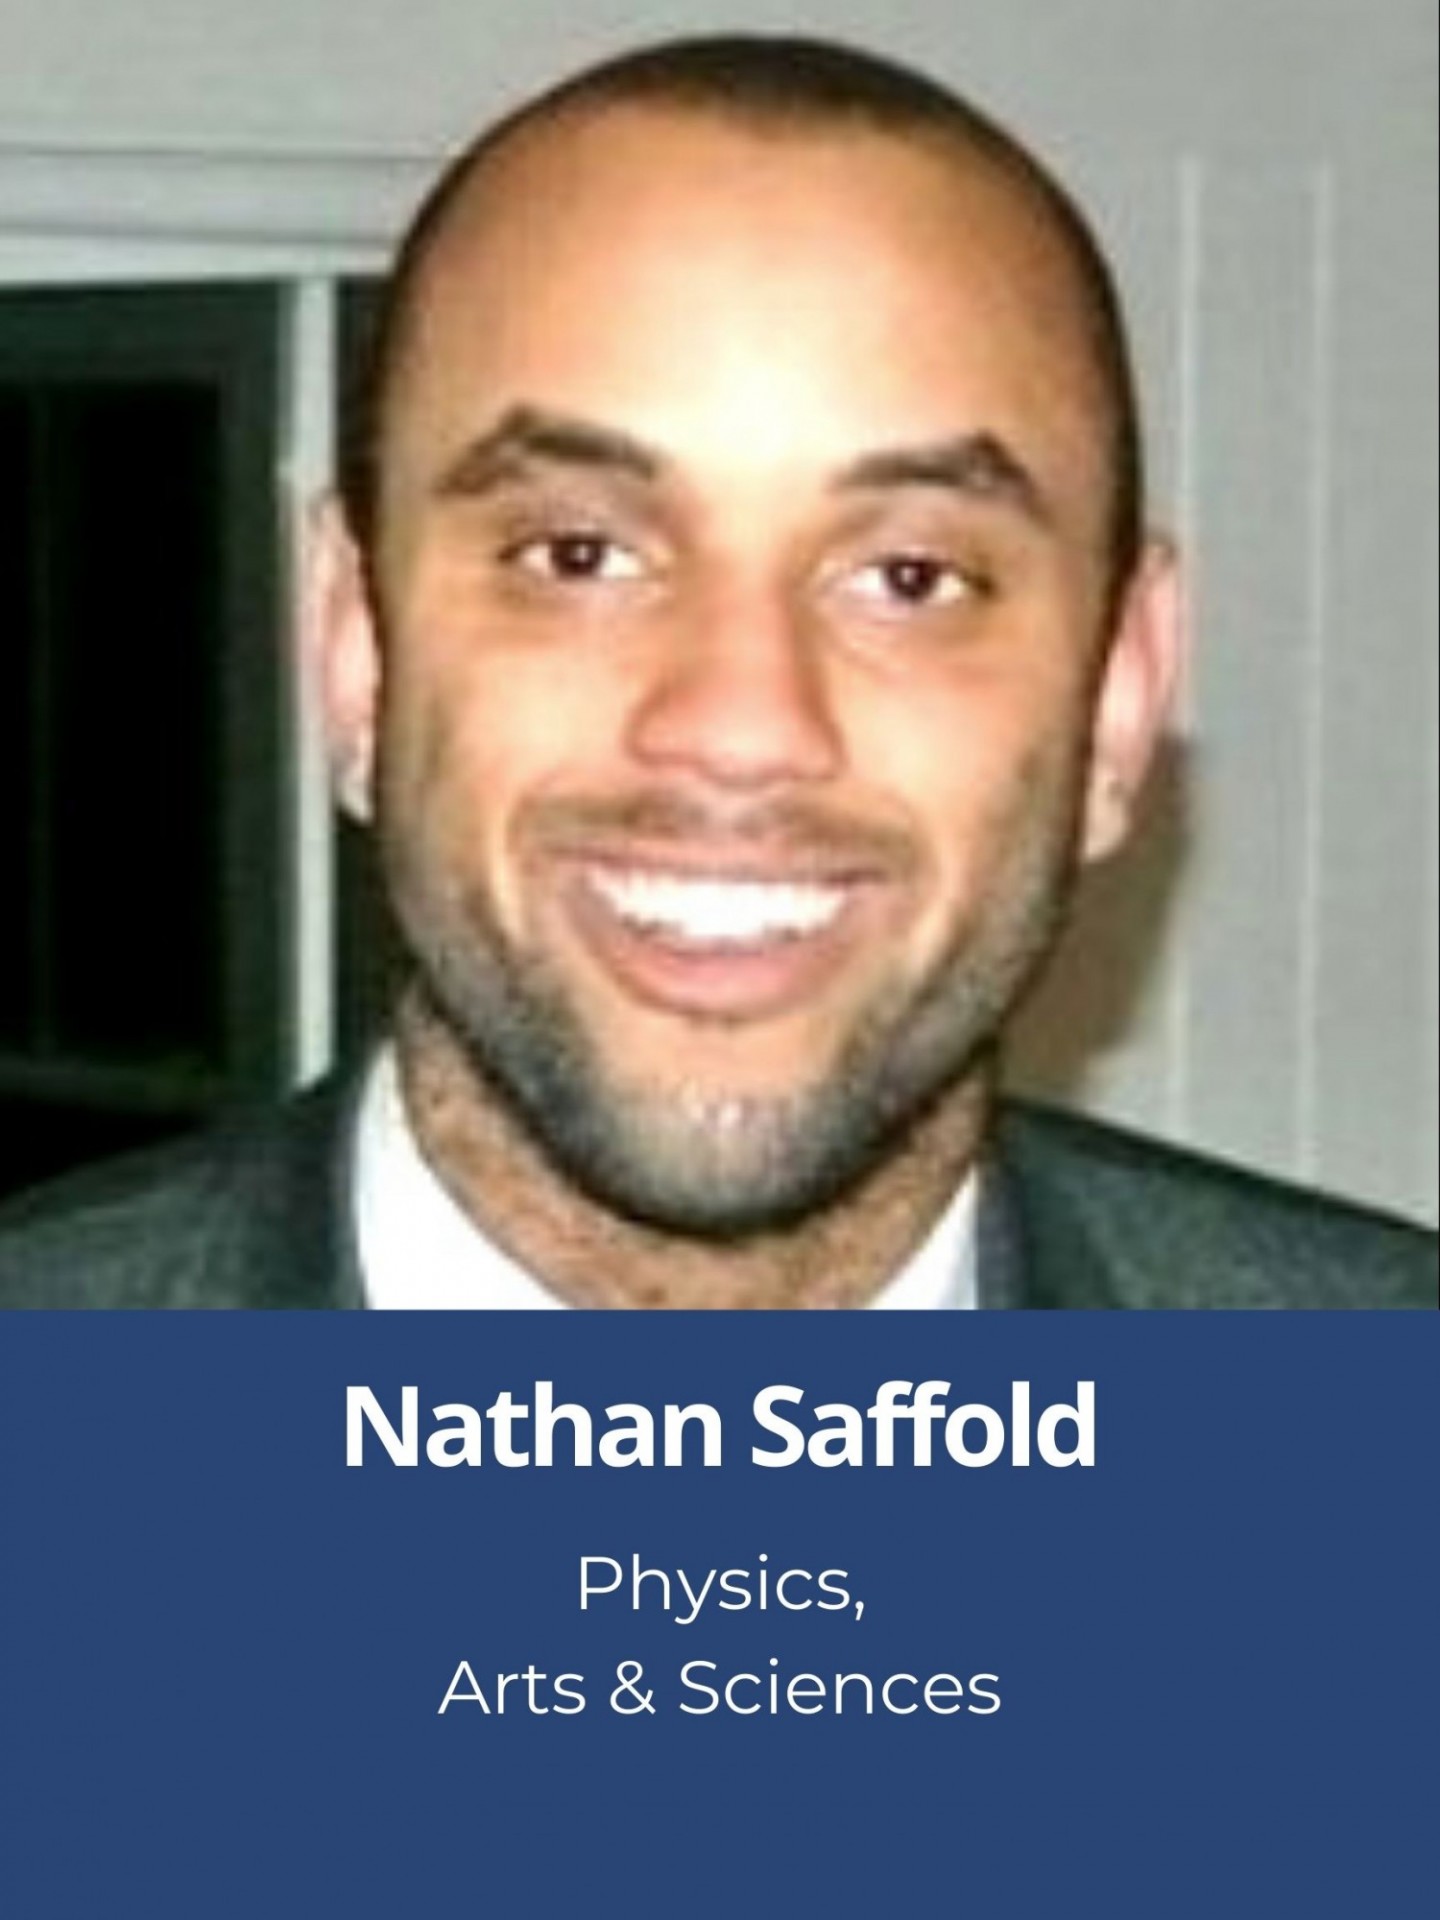 Nathan Saffold